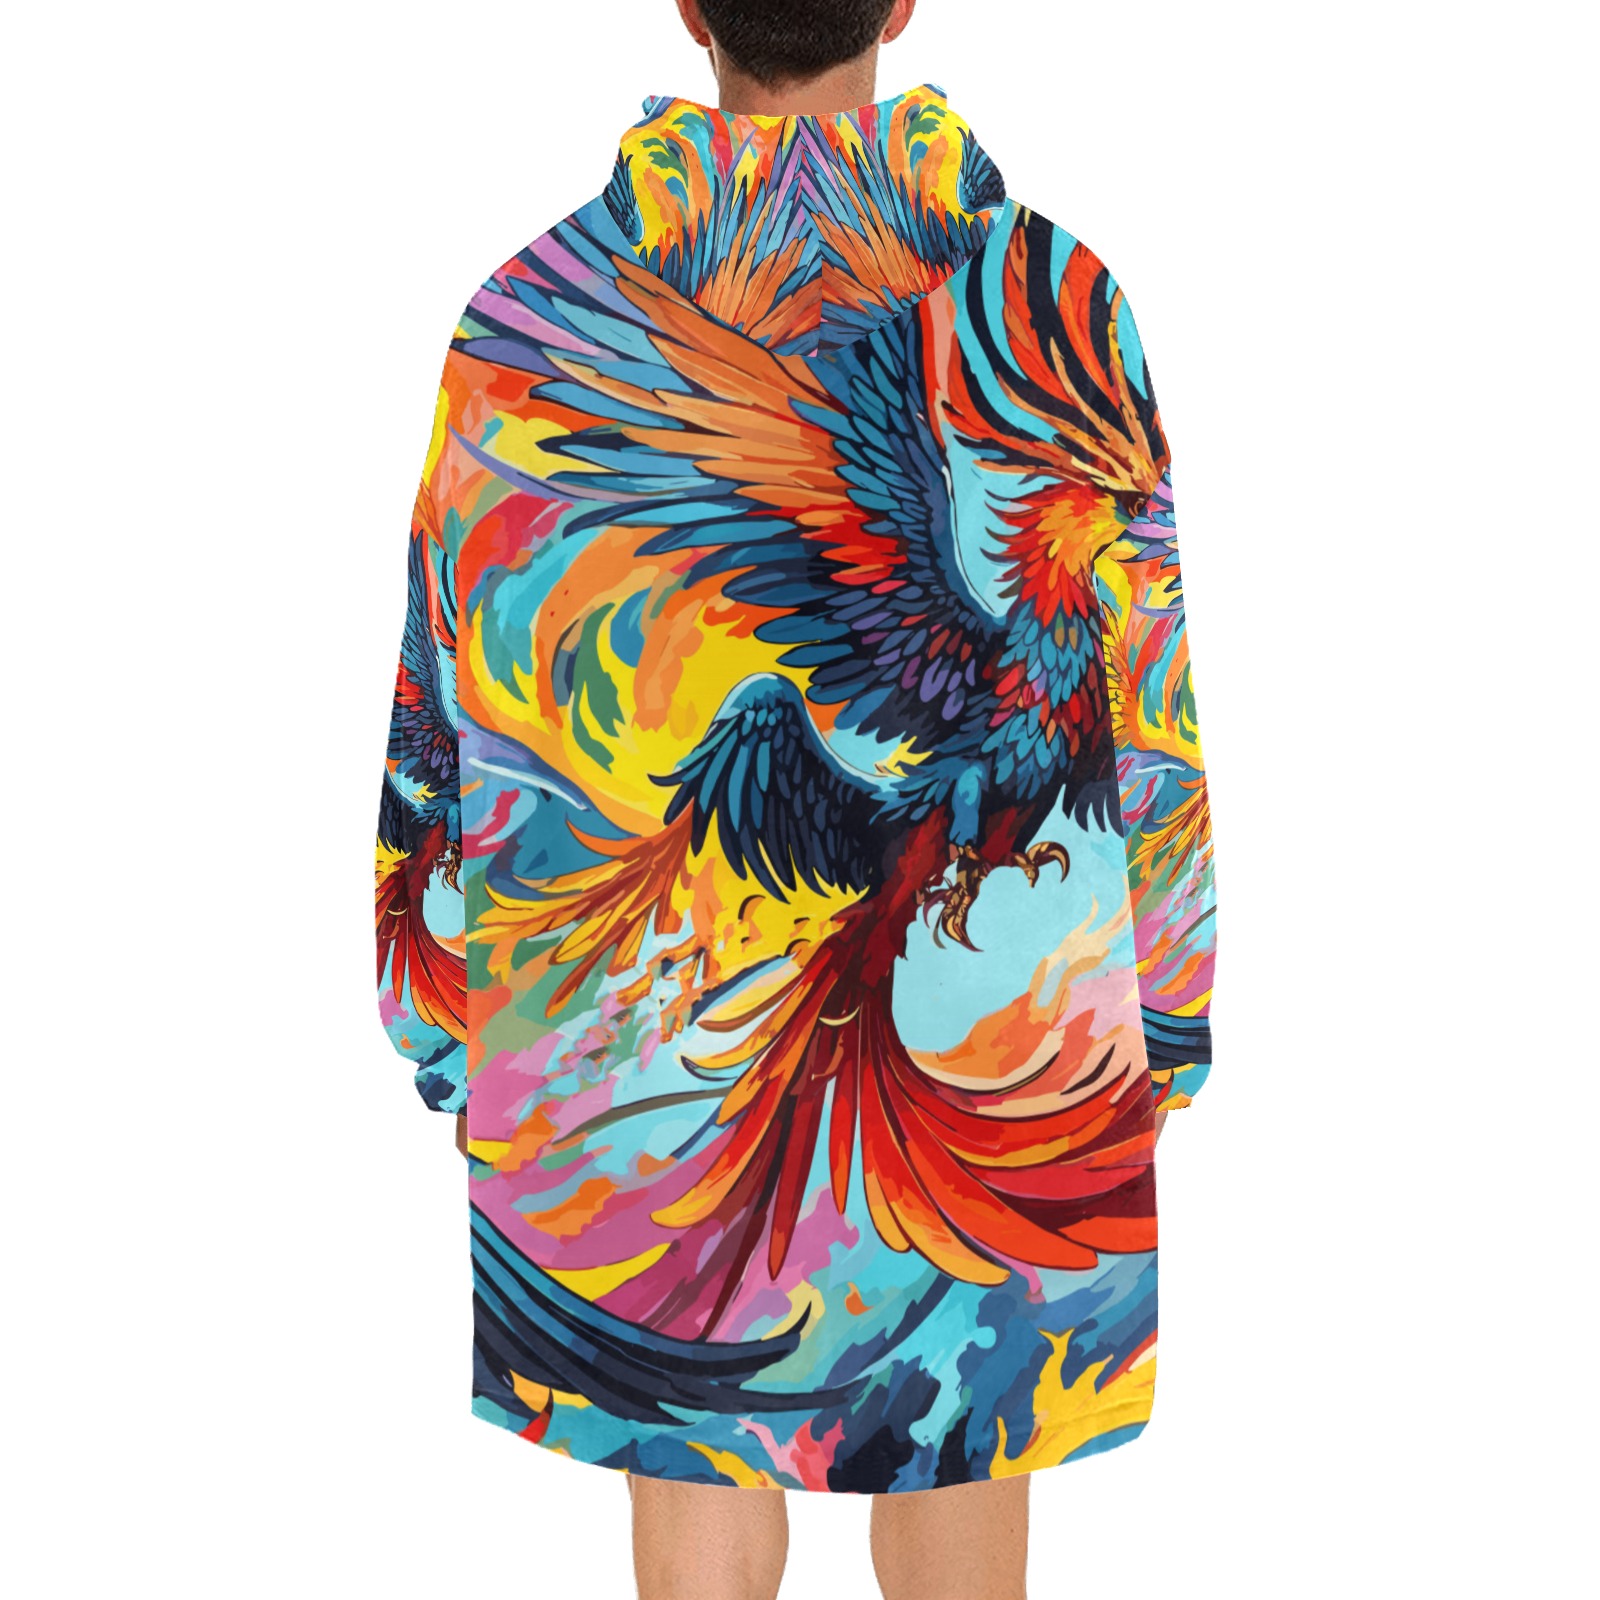 Striking fantastic phoenix birds and flames art. Blanket Hoodie for Men